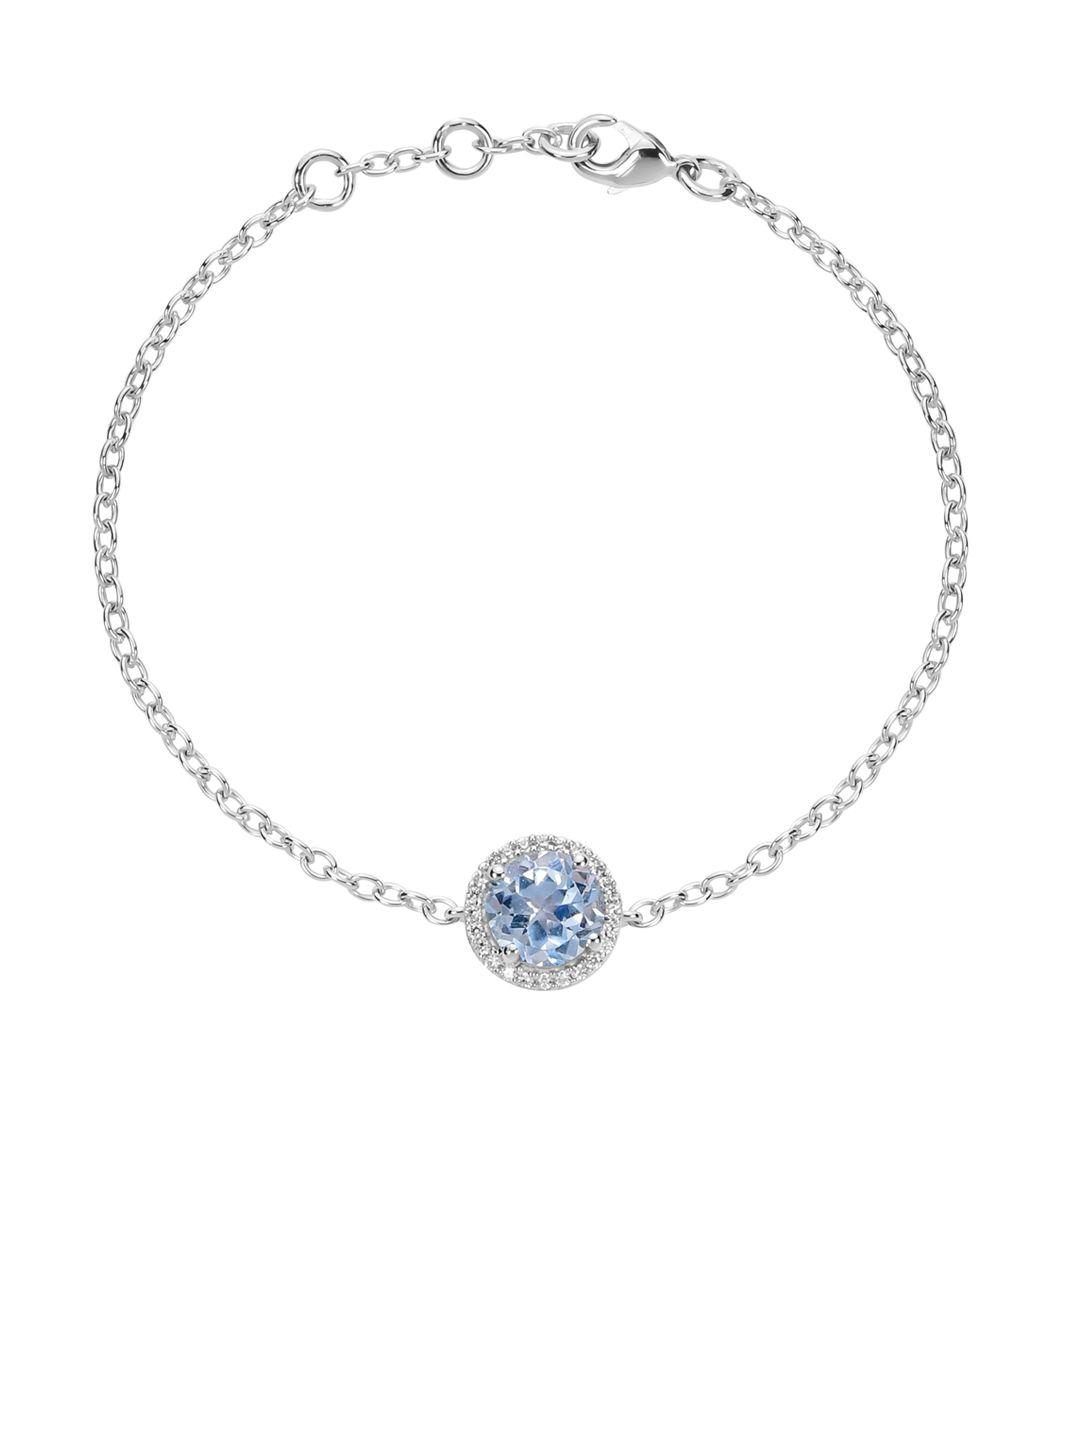 la soula 925 sterling silver & blue studded bracelet rakhi